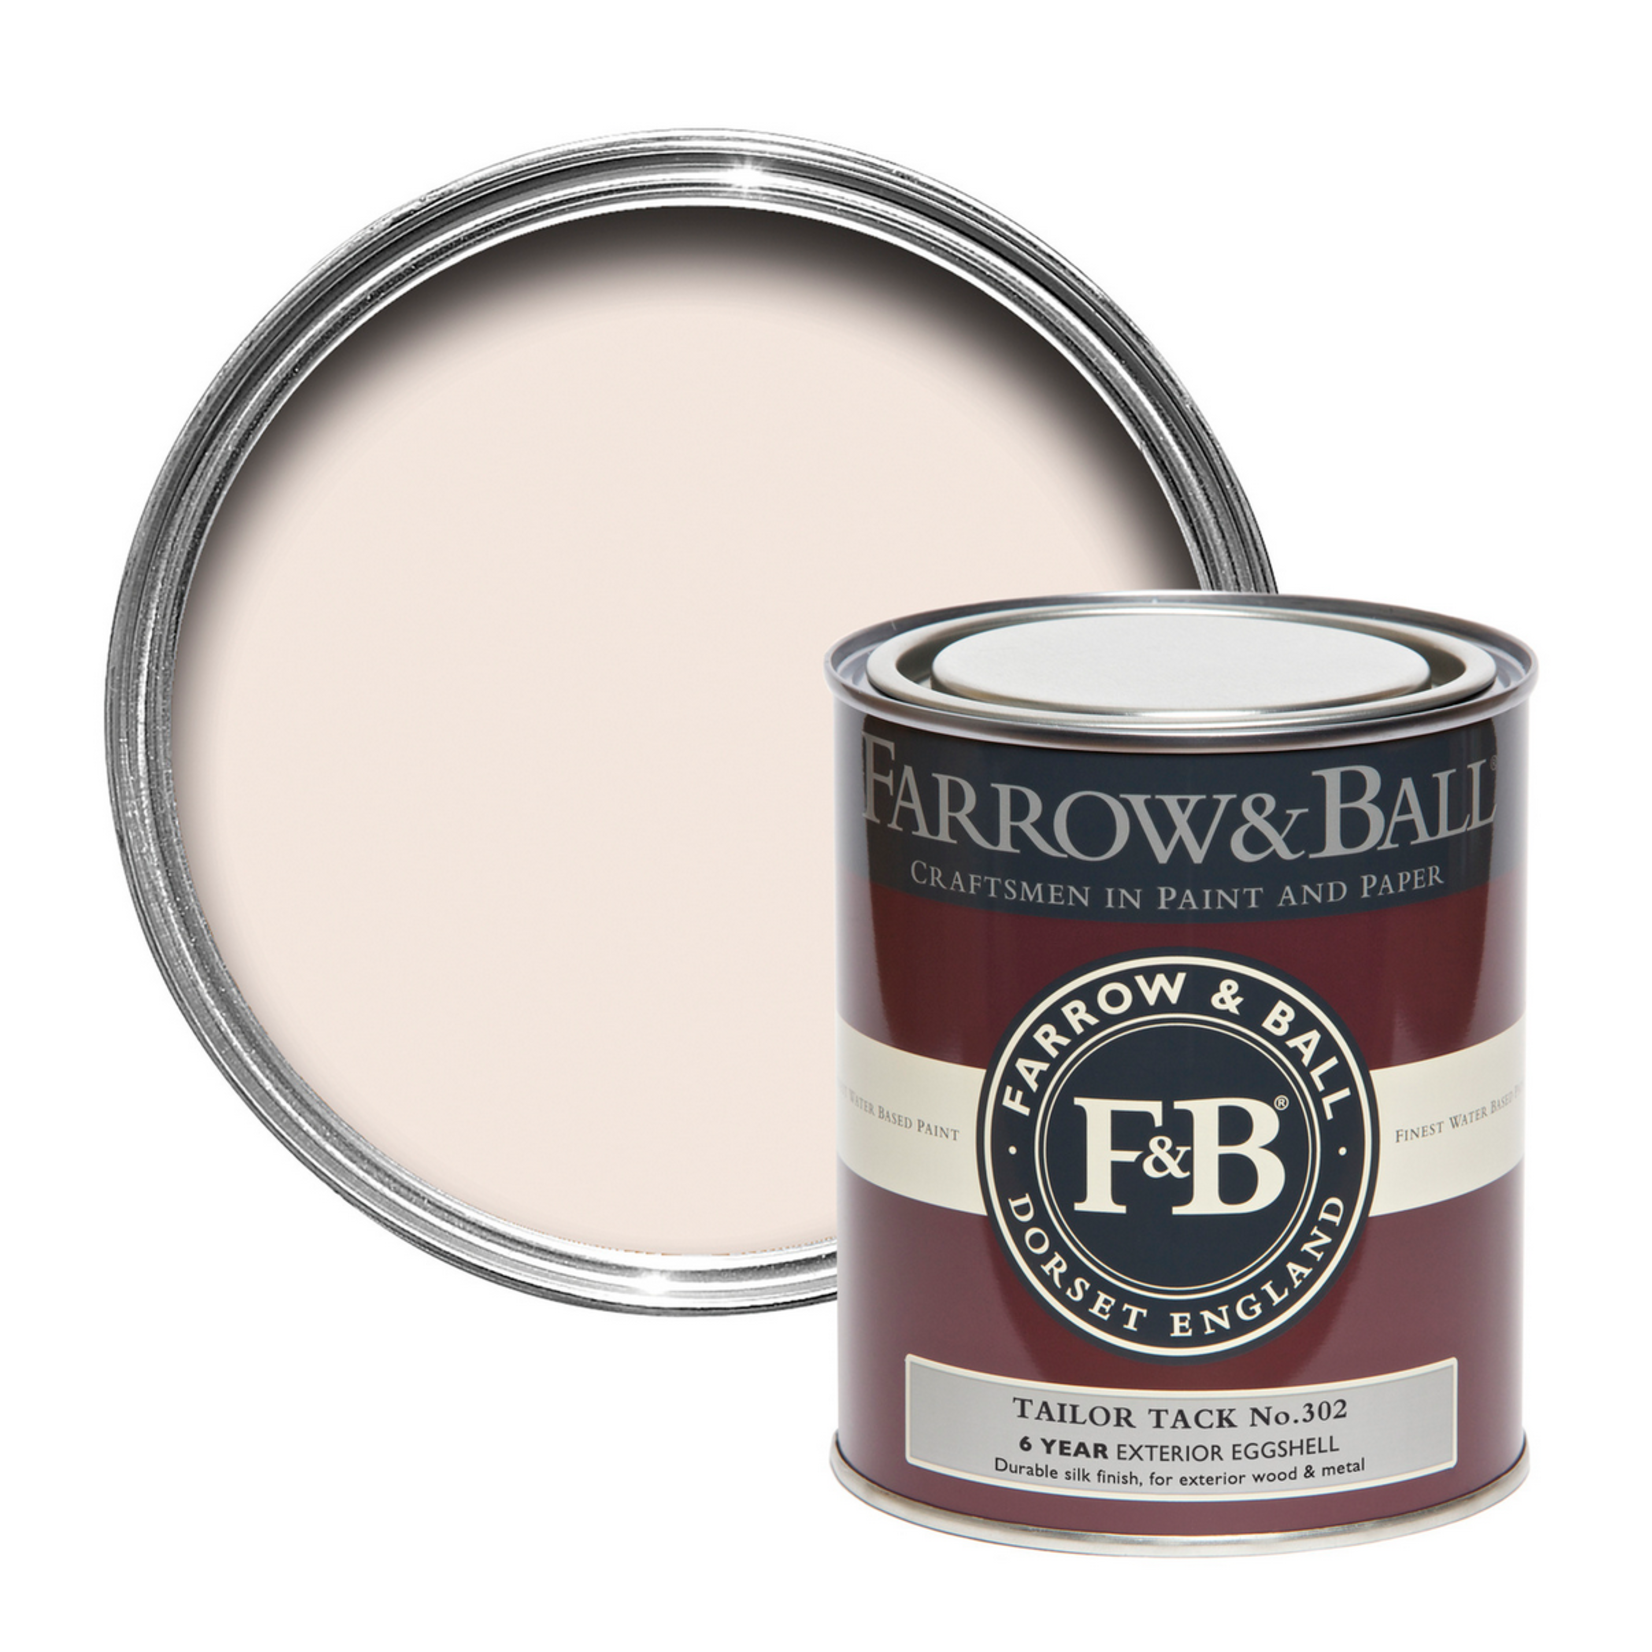 Farrow & Ball 750ml Exterior Eggshell Tailor Tack No.302